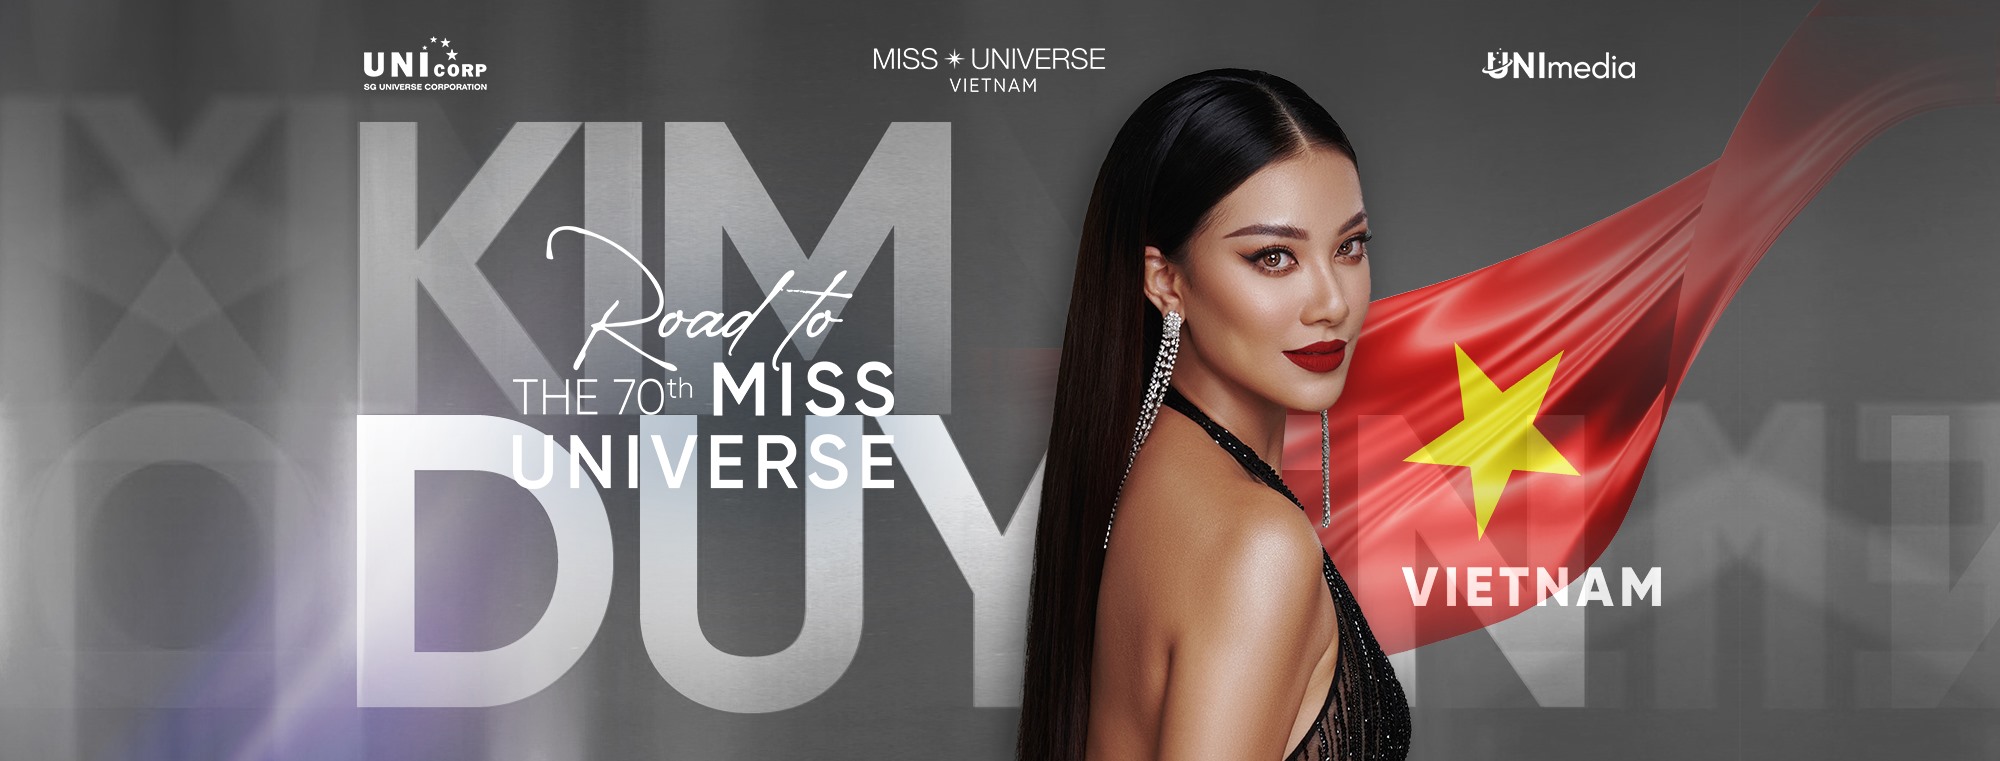 Kim Duyên cố gắng thay đổi để đến với đấu trường quốc tế Miss Universe